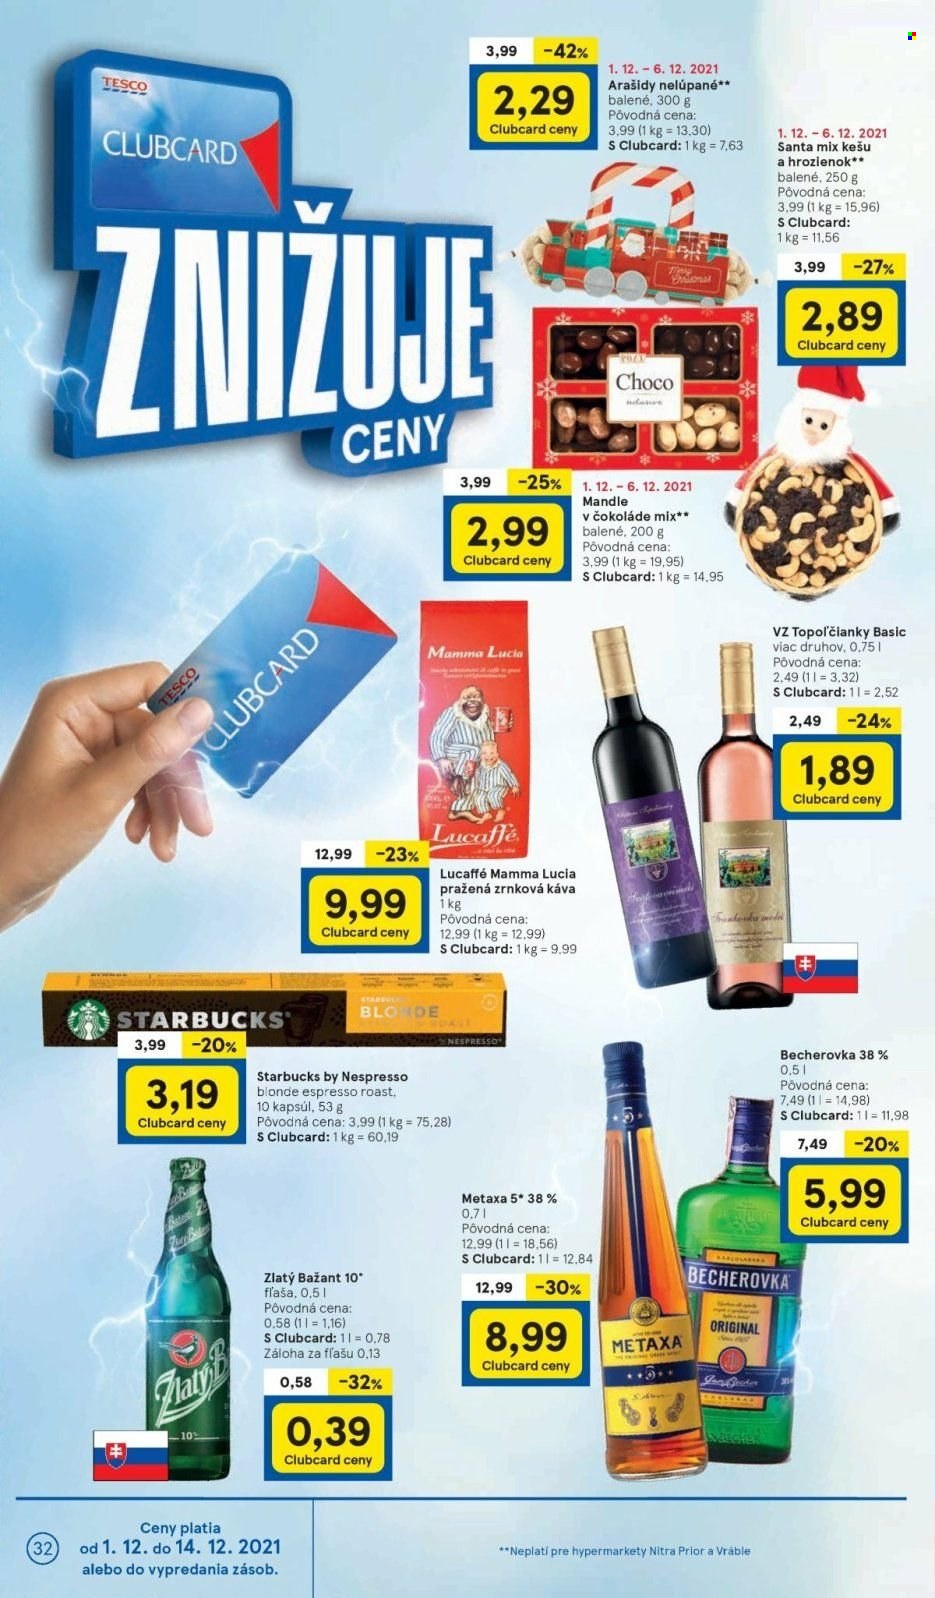 Leták TESCO supermarket - 1.12.2021 - 6.12.2021.